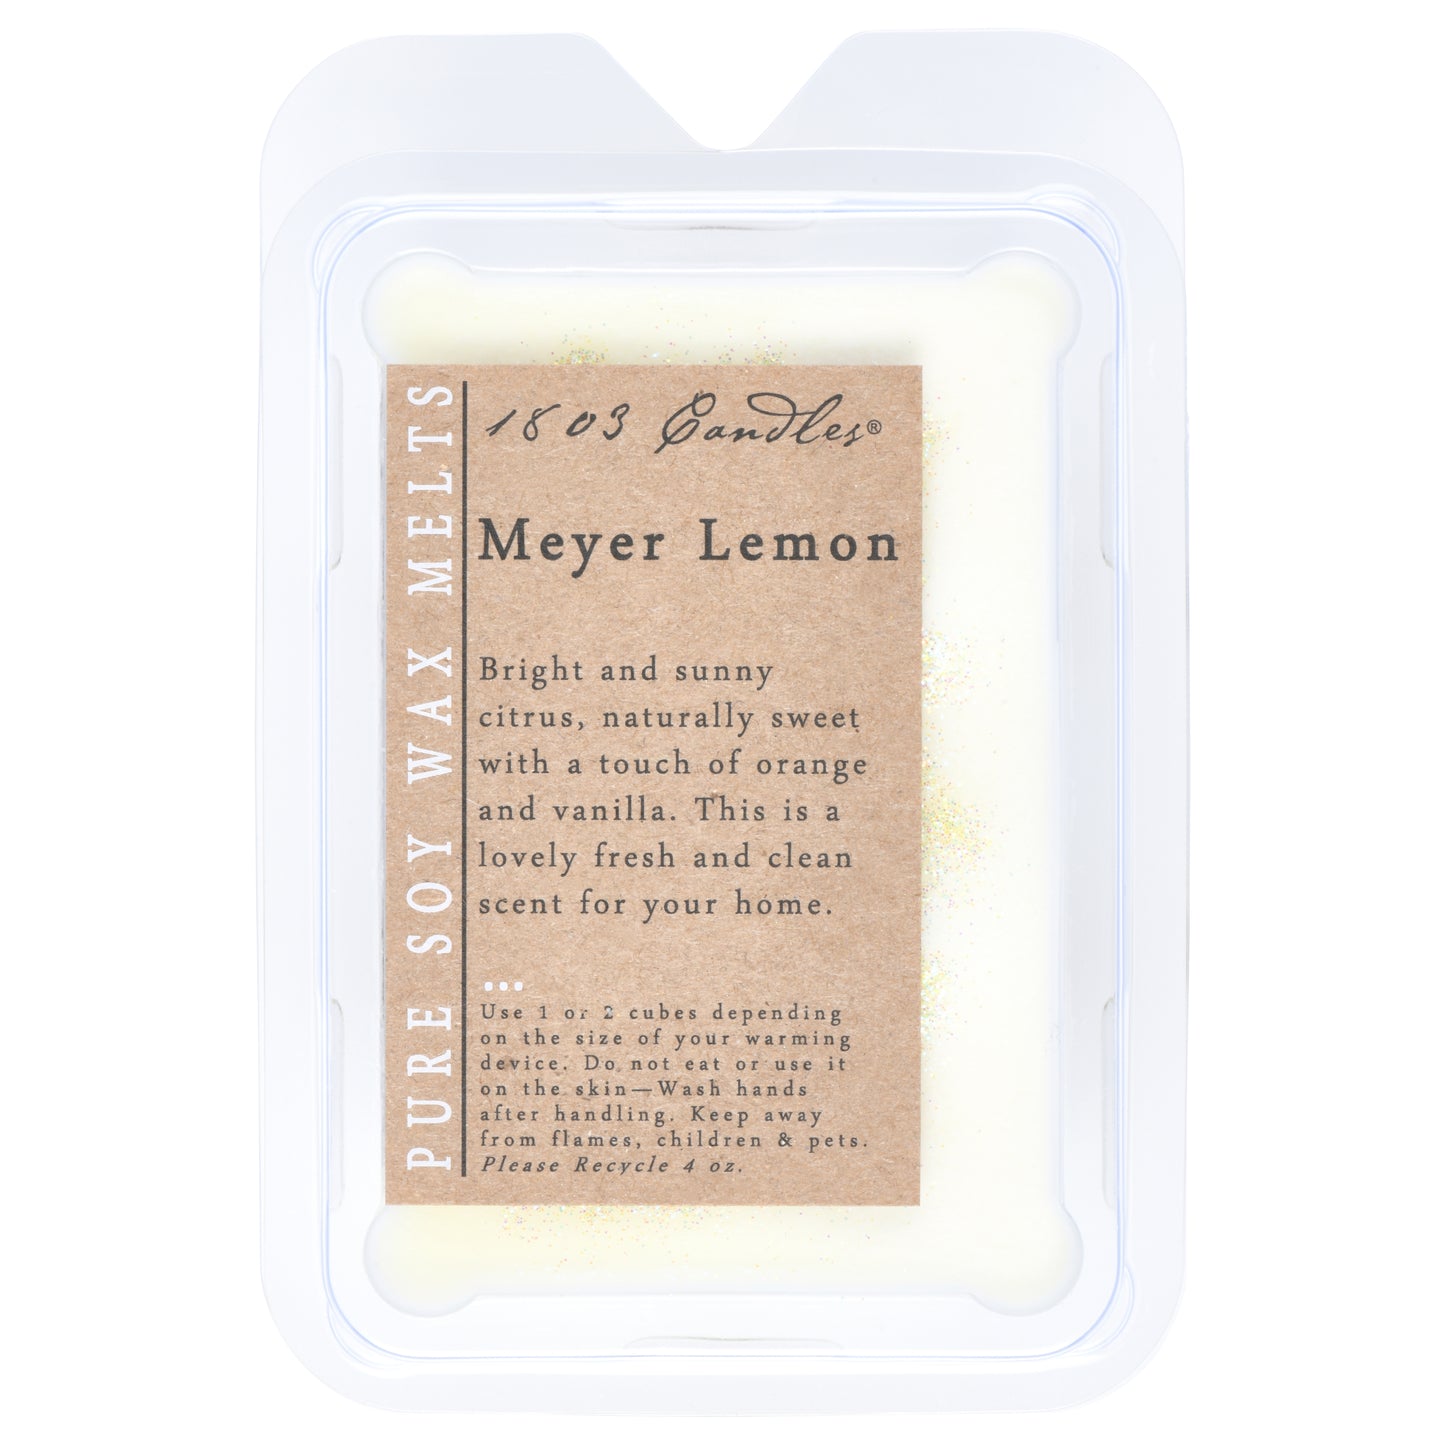 1803 Candles: Meyer Lemon Soy Melter